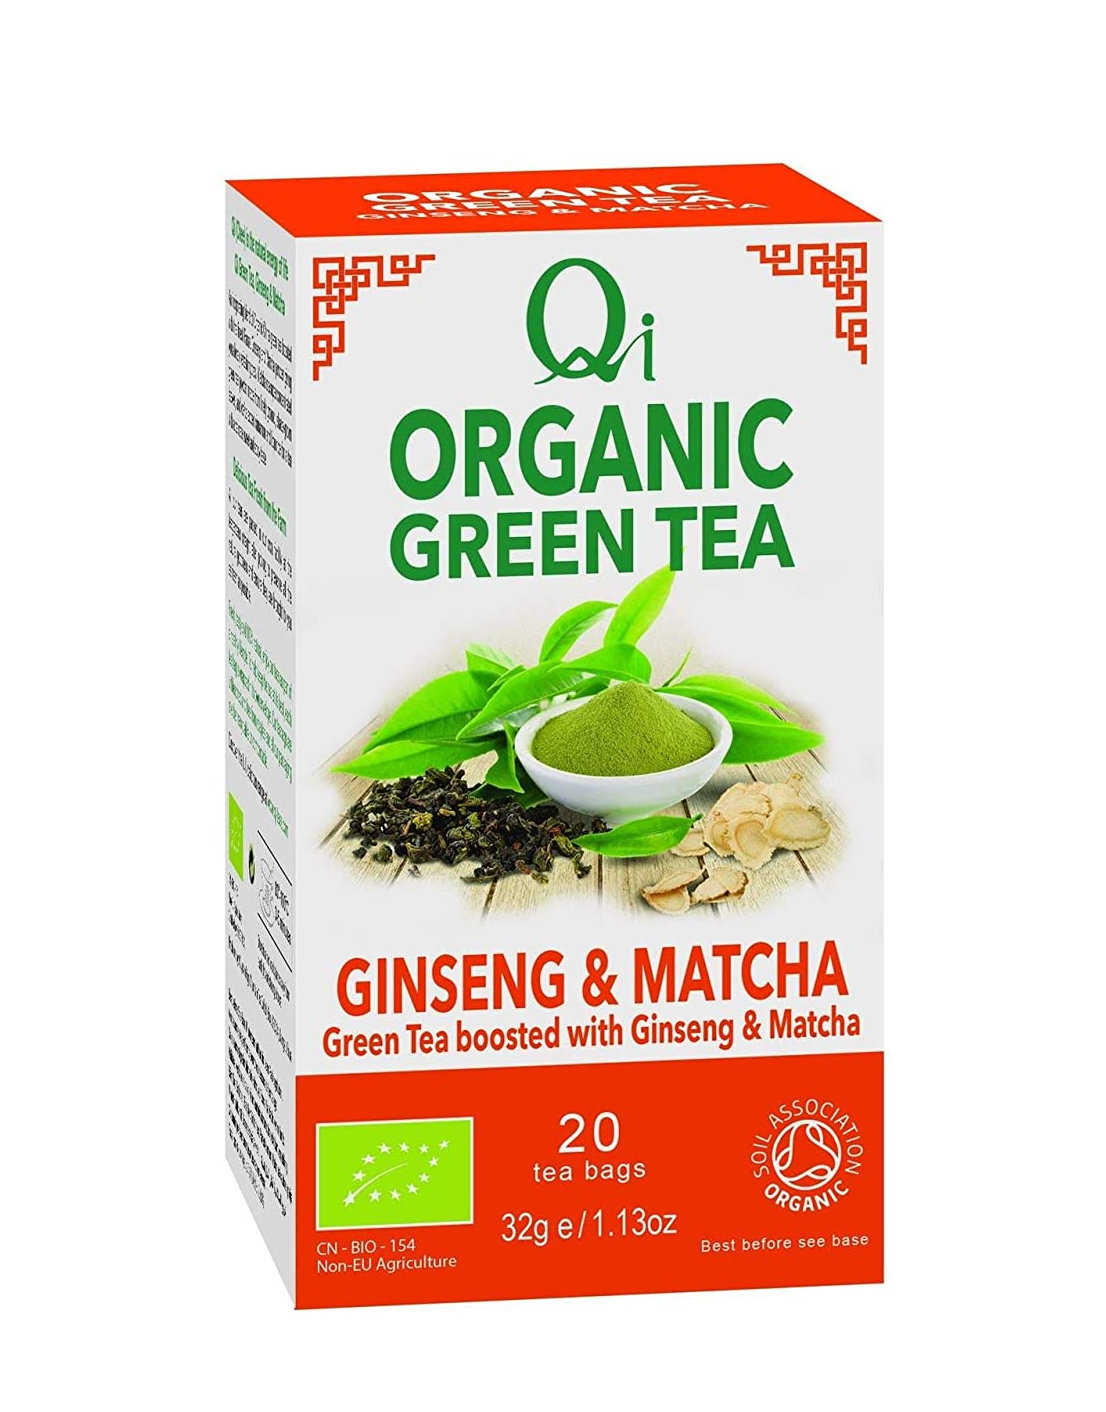 Real Tea, Té verde matcha orgánico en polvo, 85 g (3 oz)